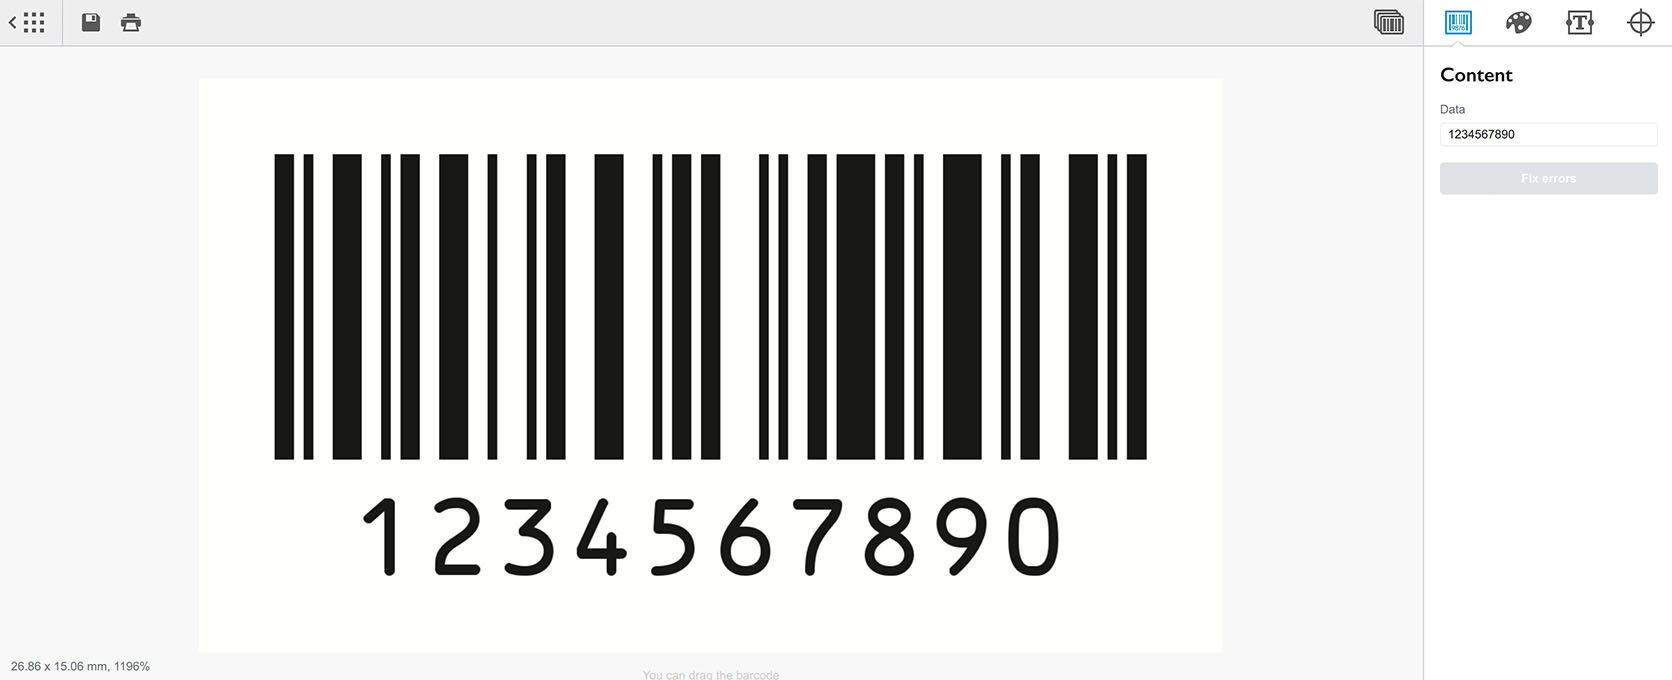 Adding new Code 128 barcode